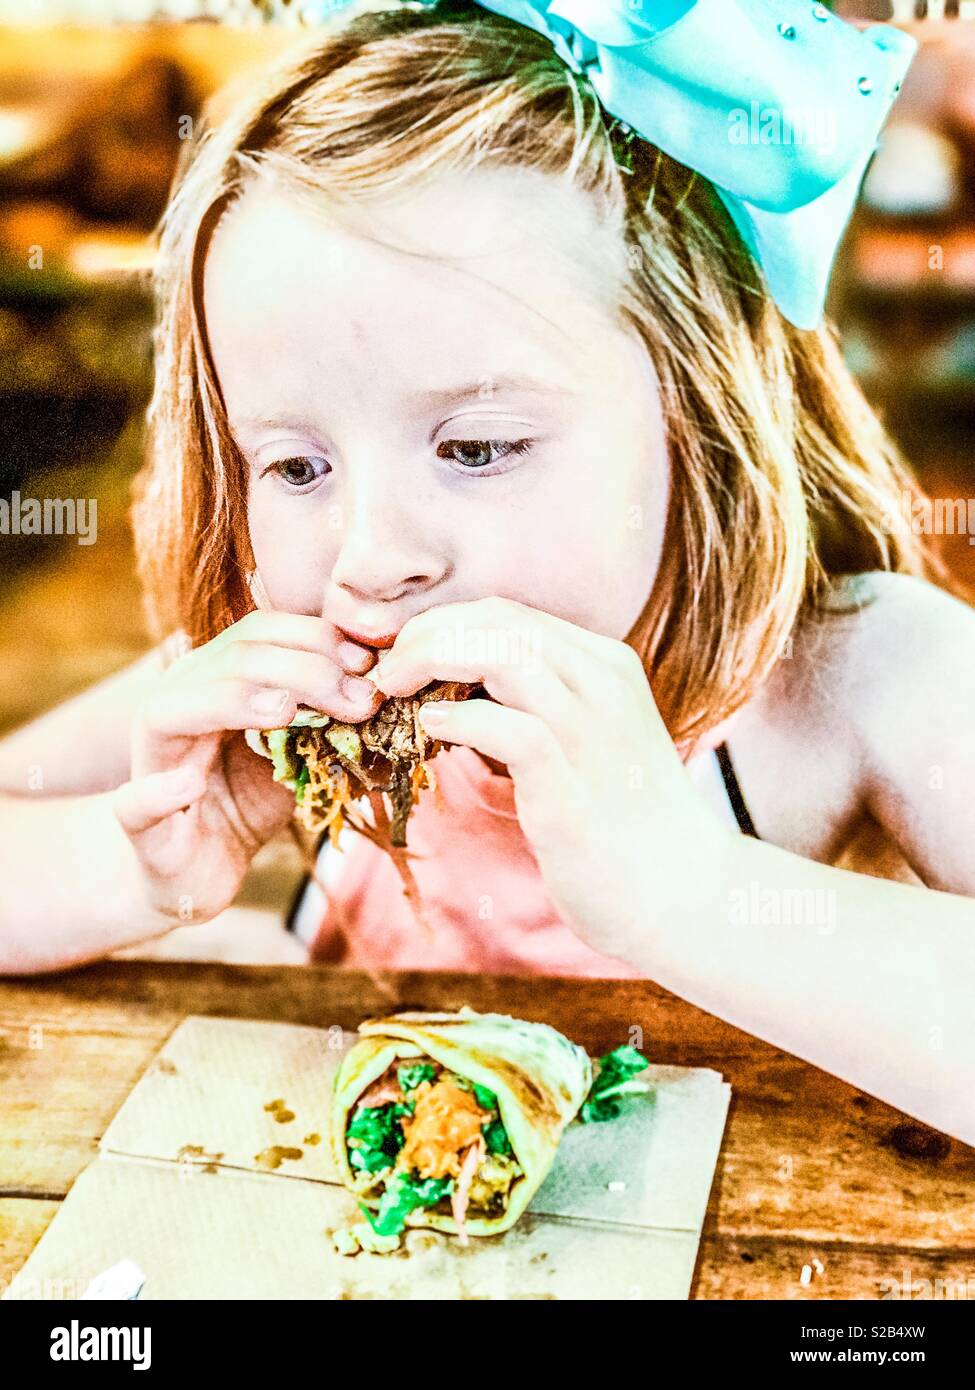 Les jeunes 7 ans, fille de manger un enveloppement de porc dans un restaurant Banque D'Images